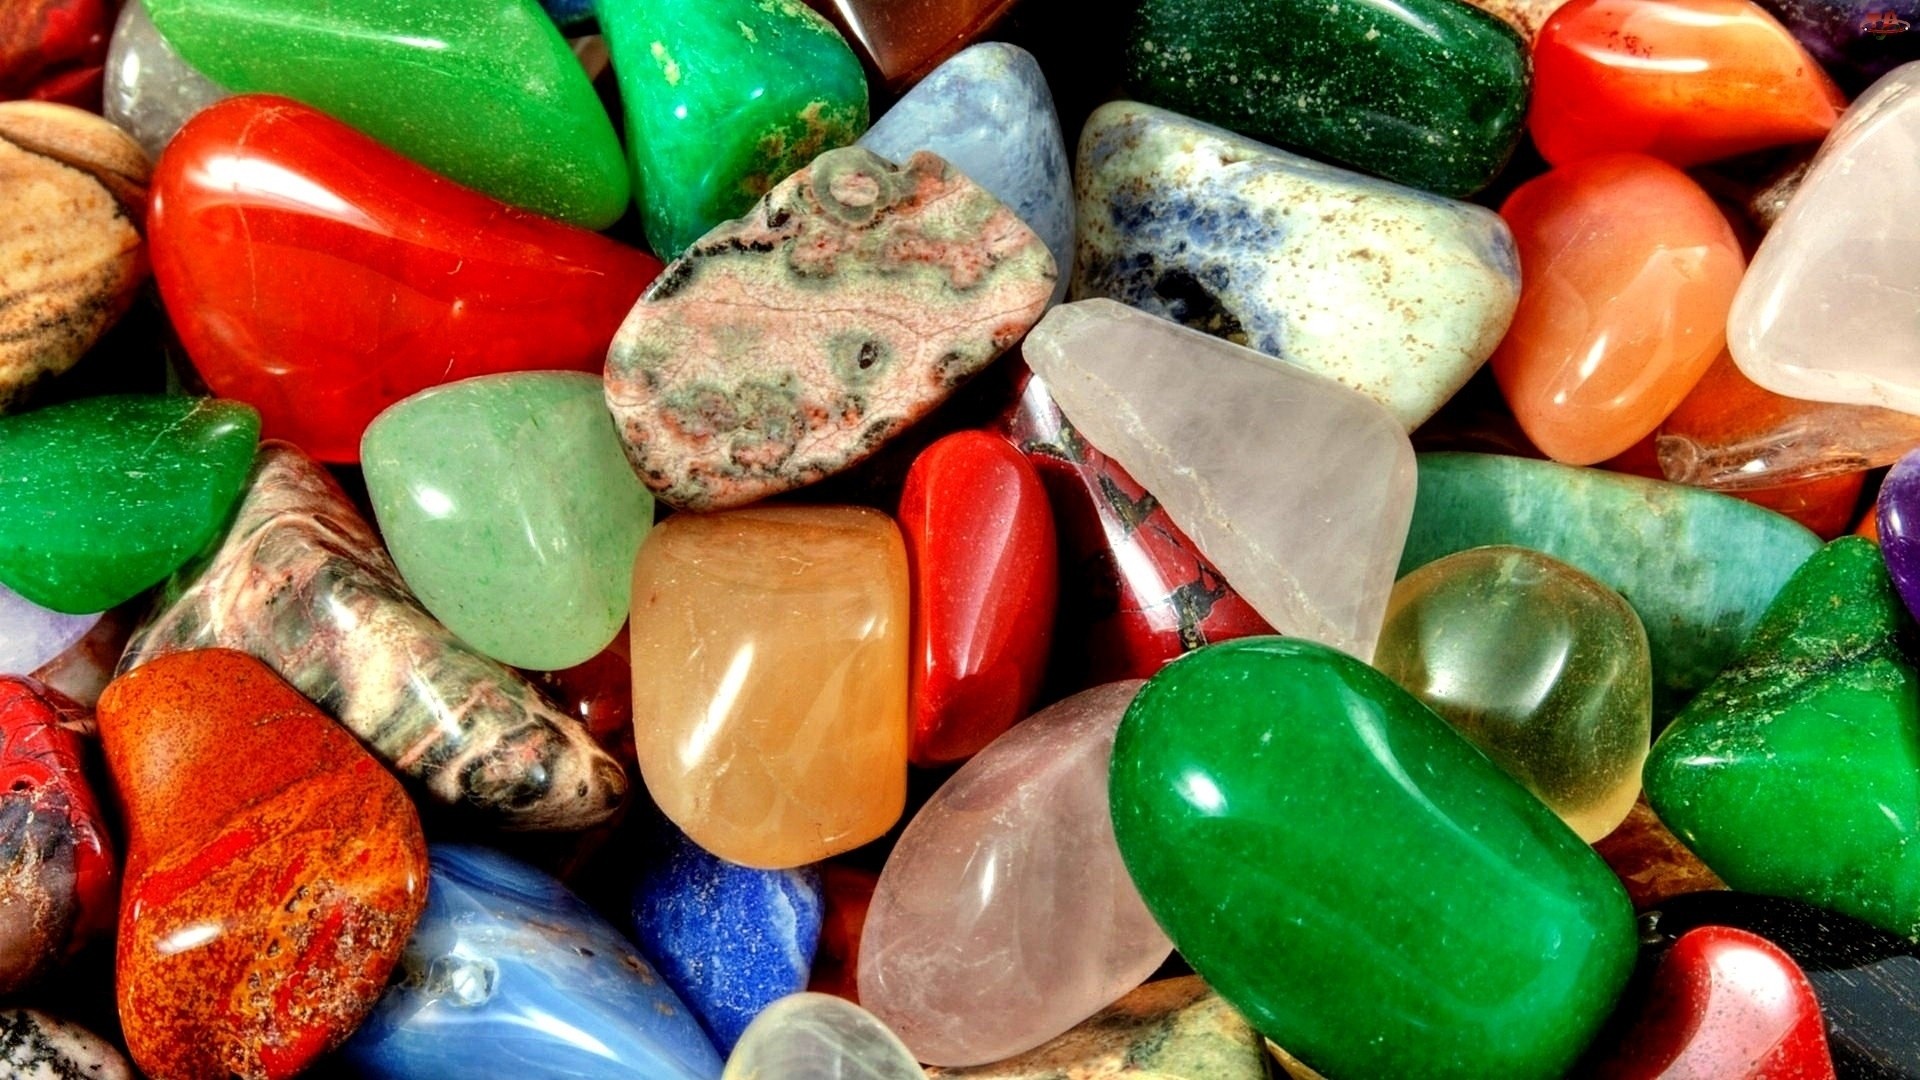 Gems Background